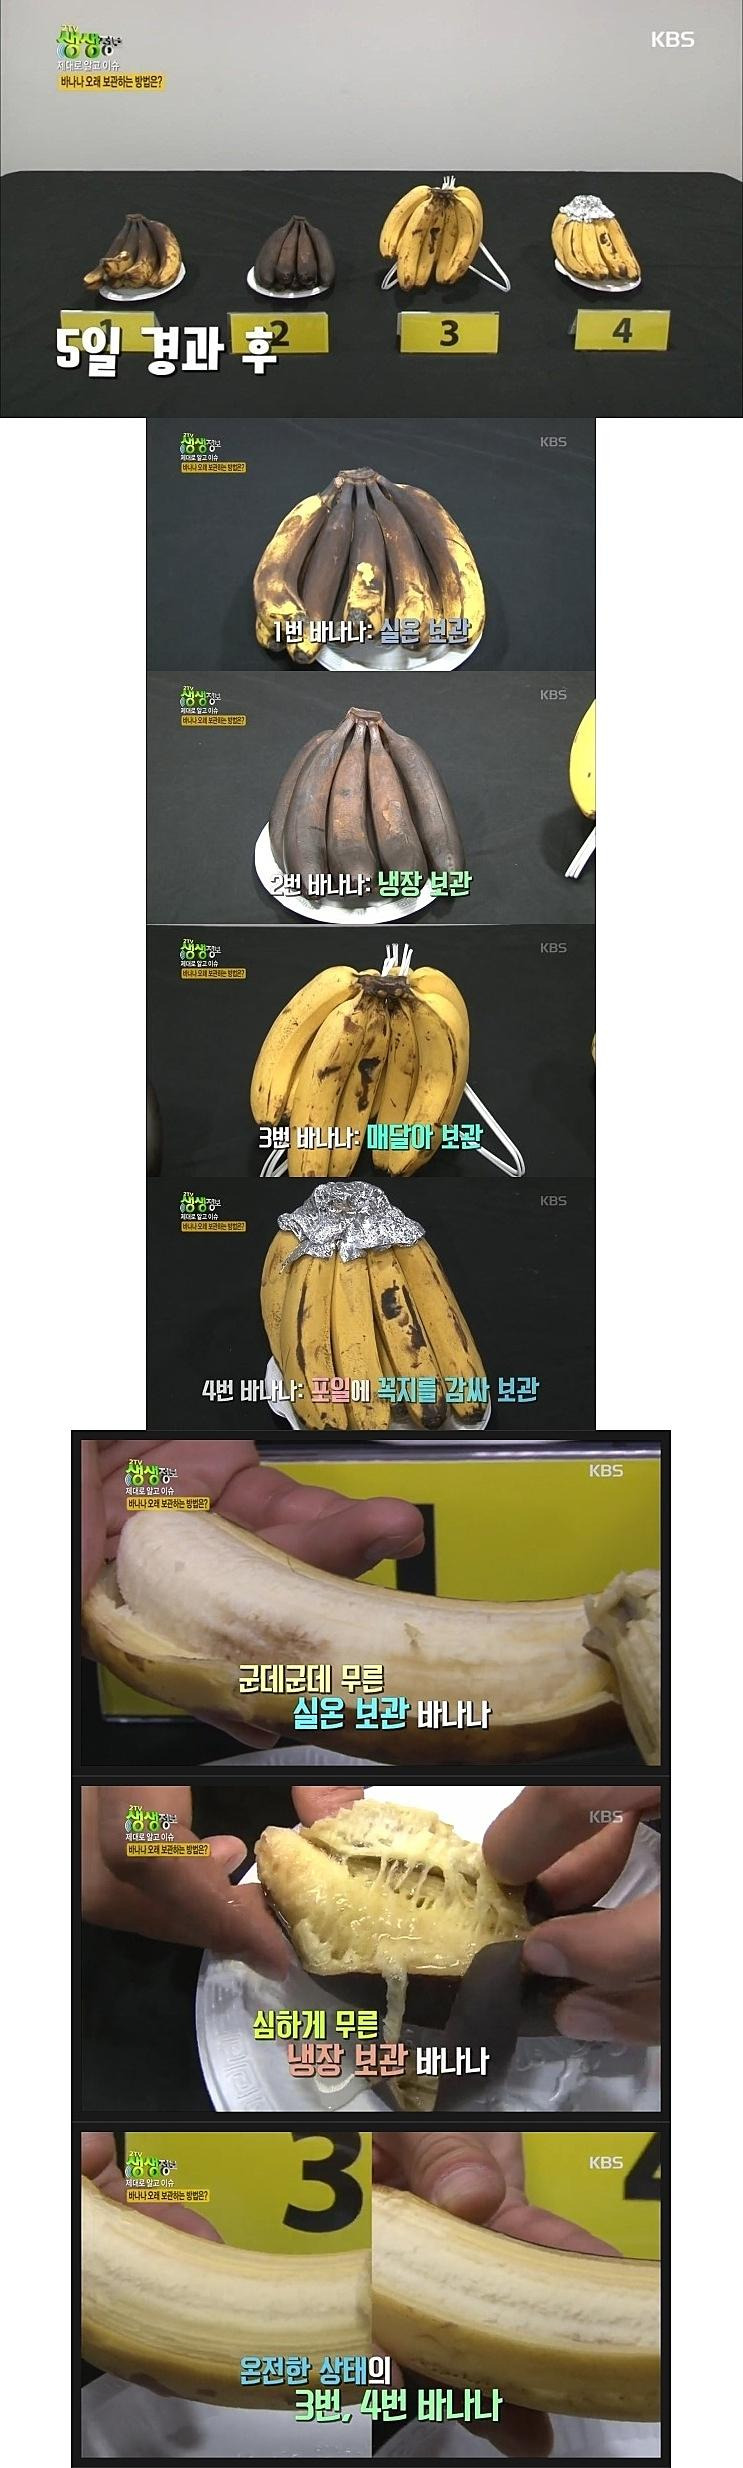 바나나 보관방법에 따른 변화 비교